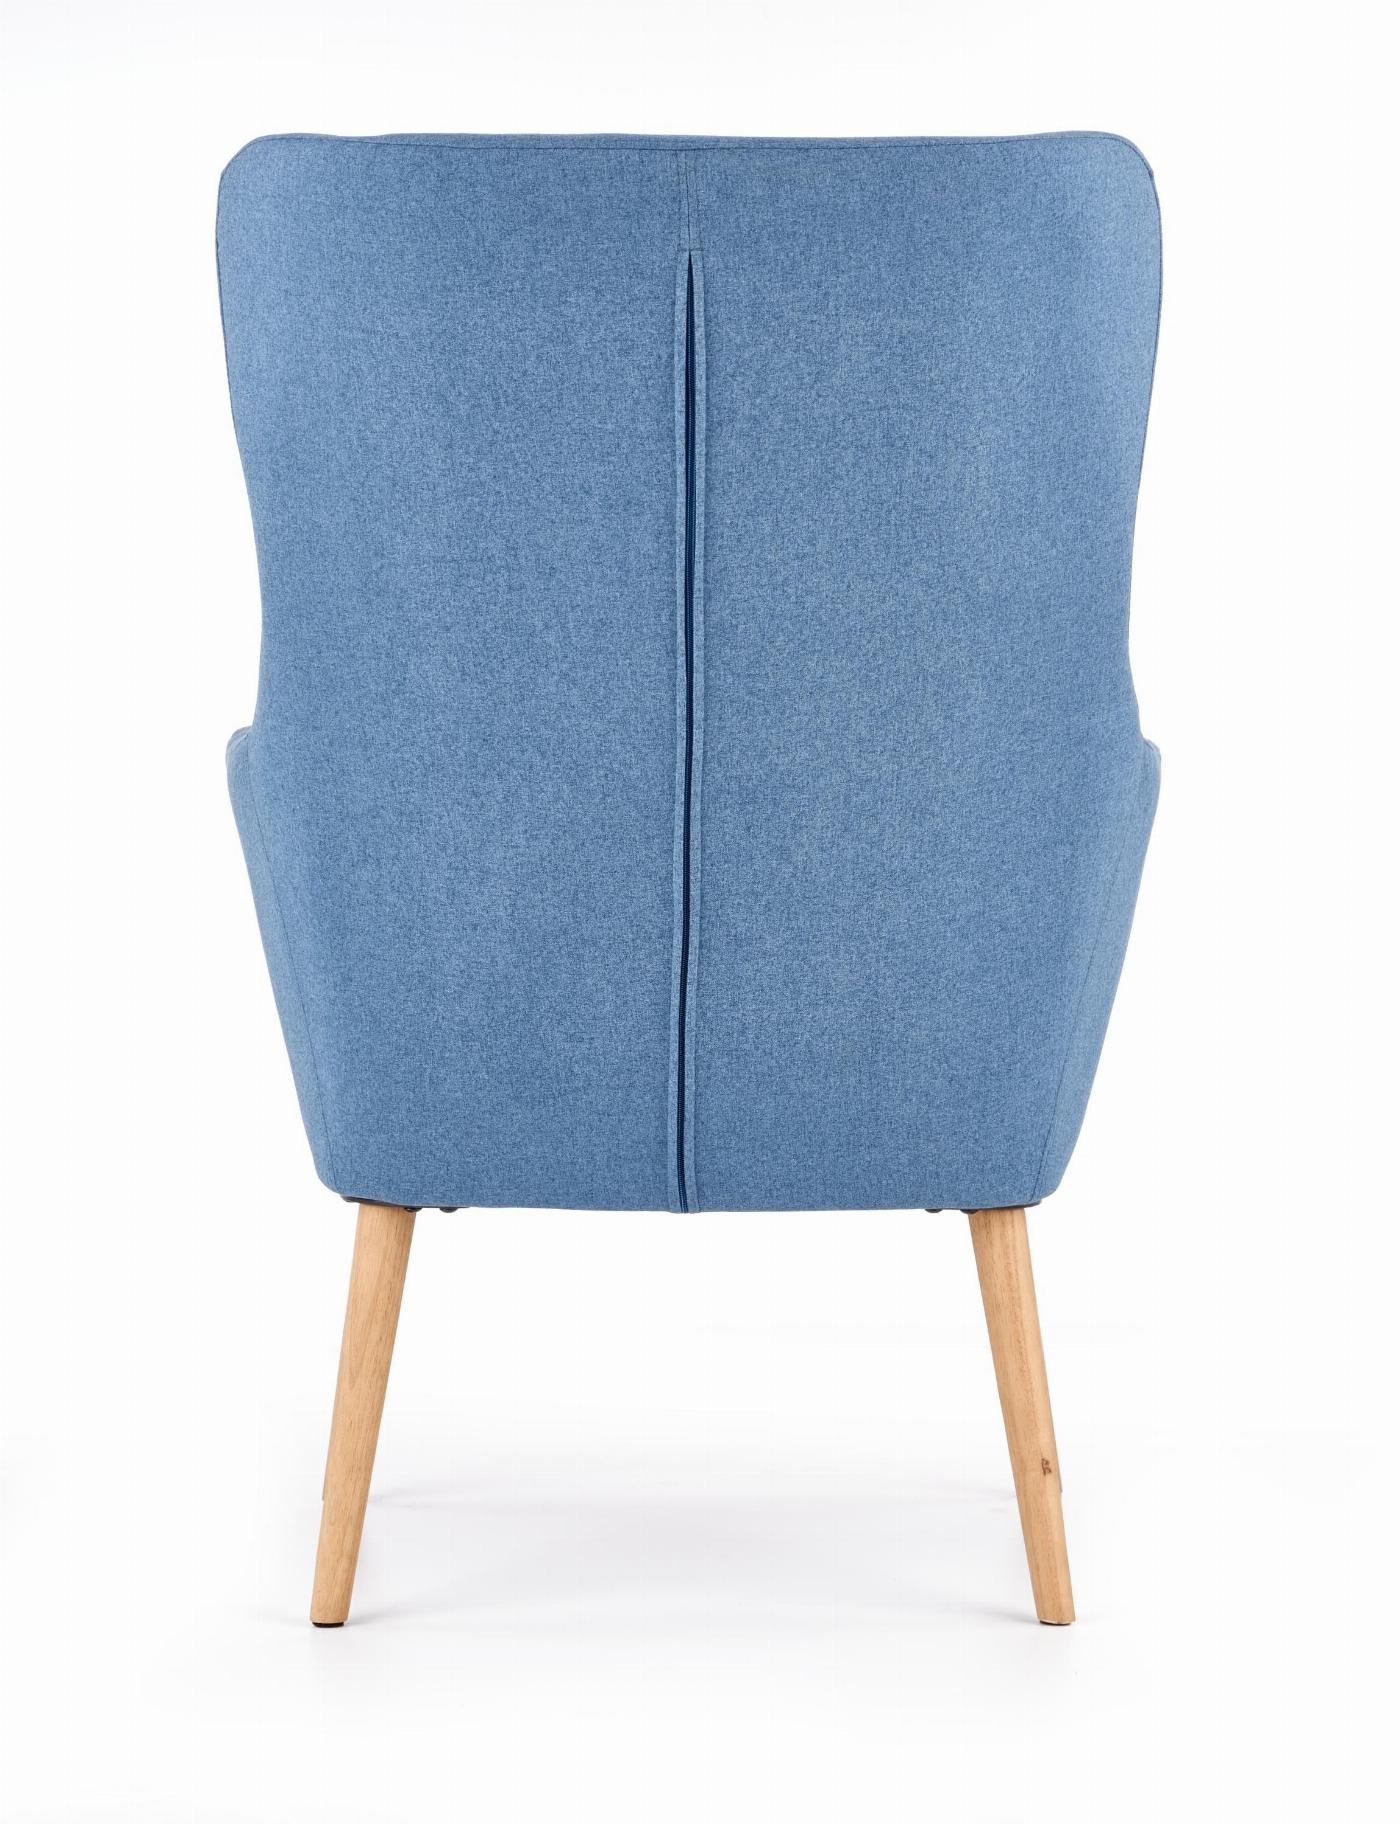 COTTO fotel wypoczynkowy niebieski